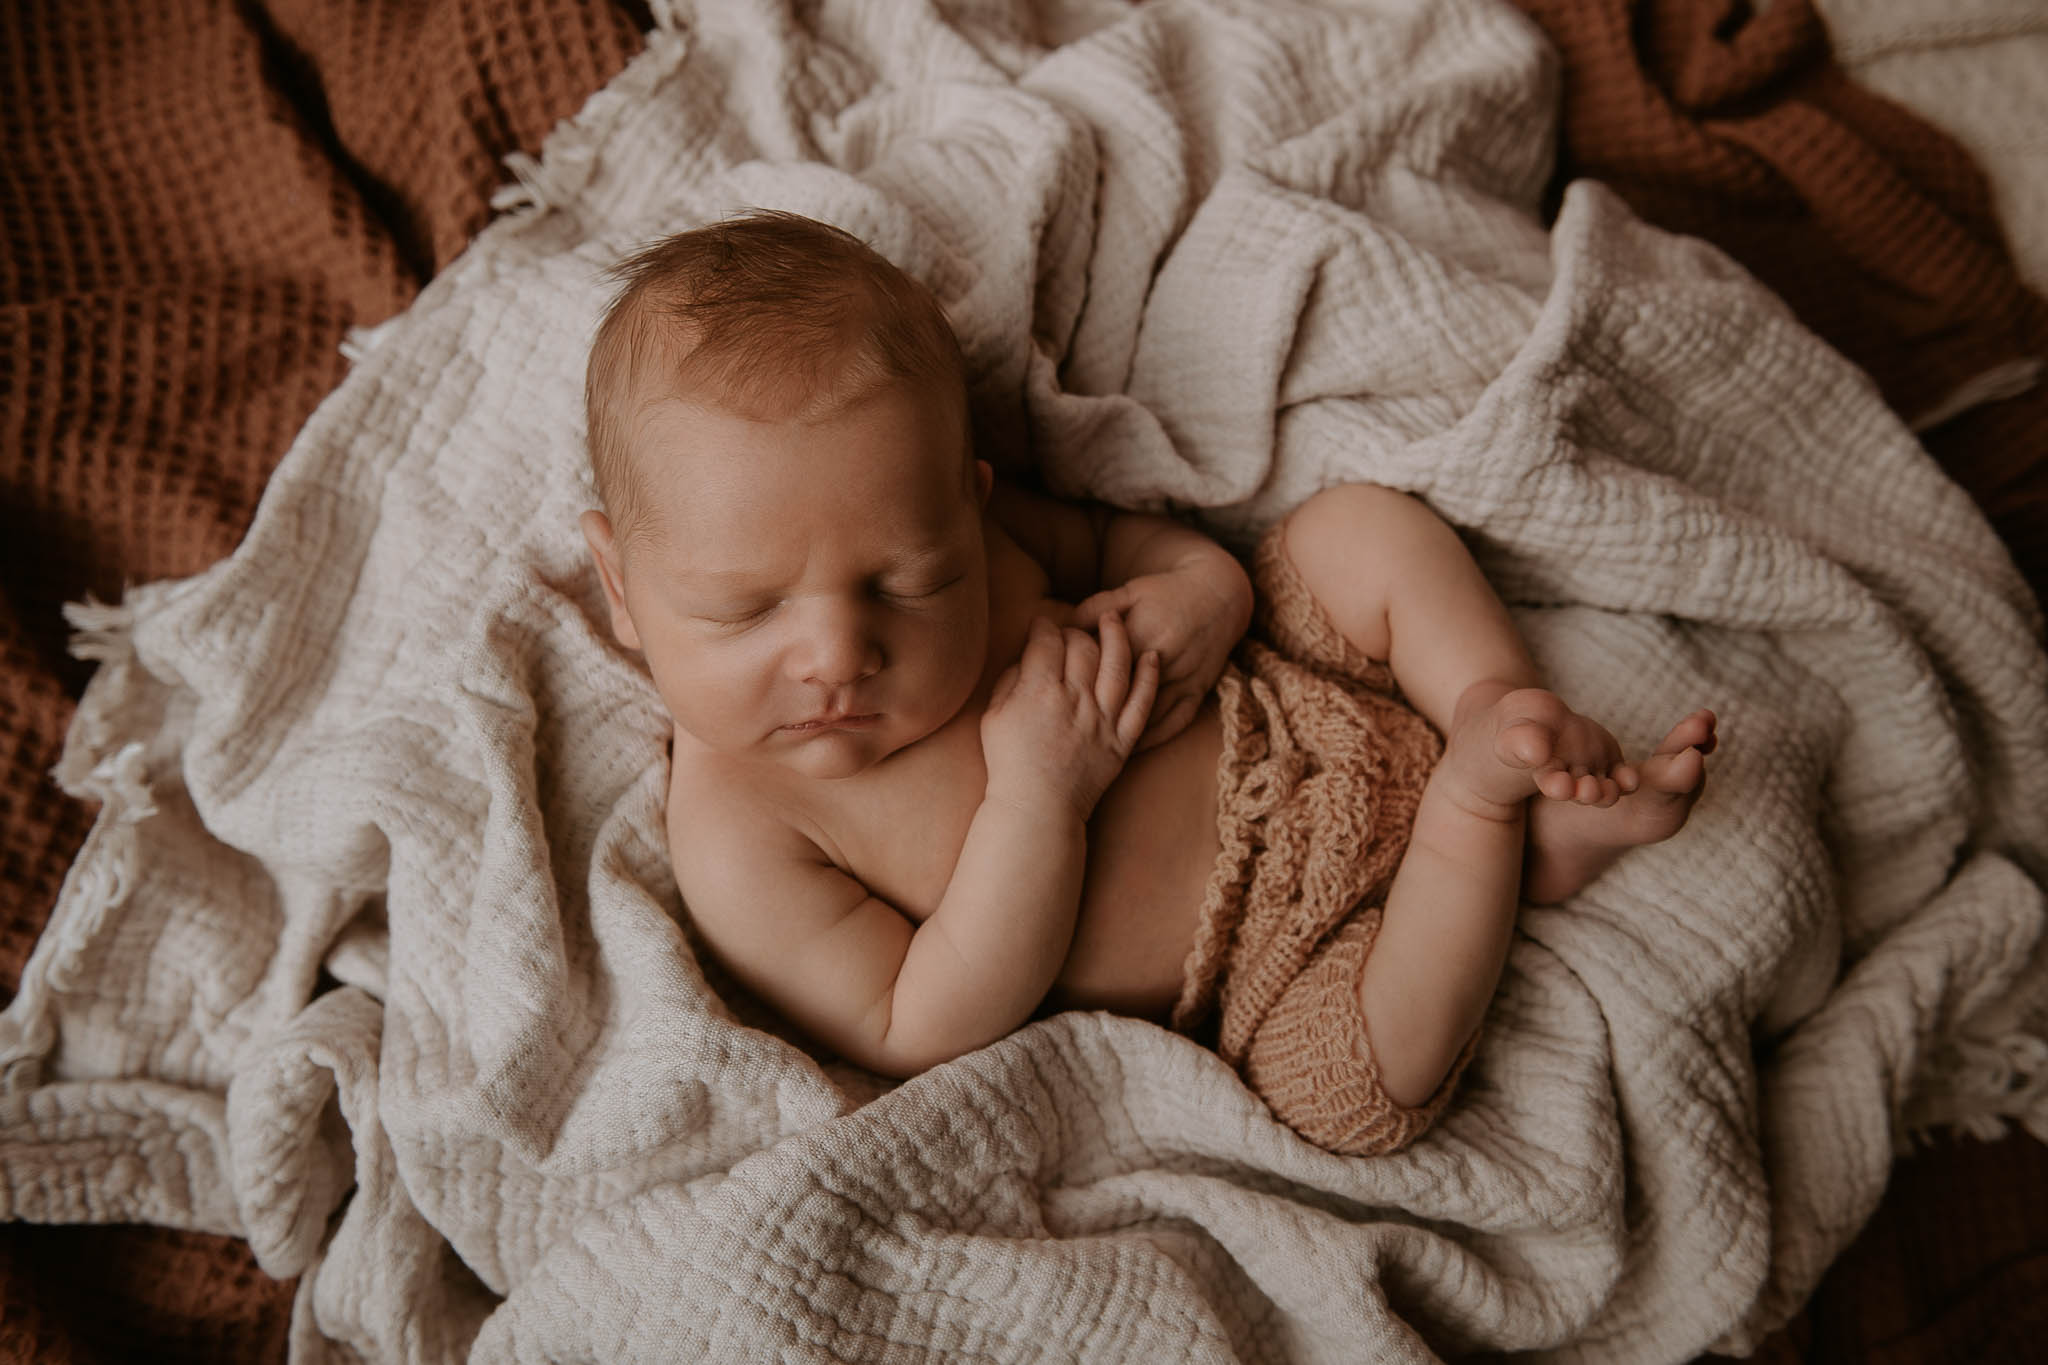 southampton-newborn-photography-533